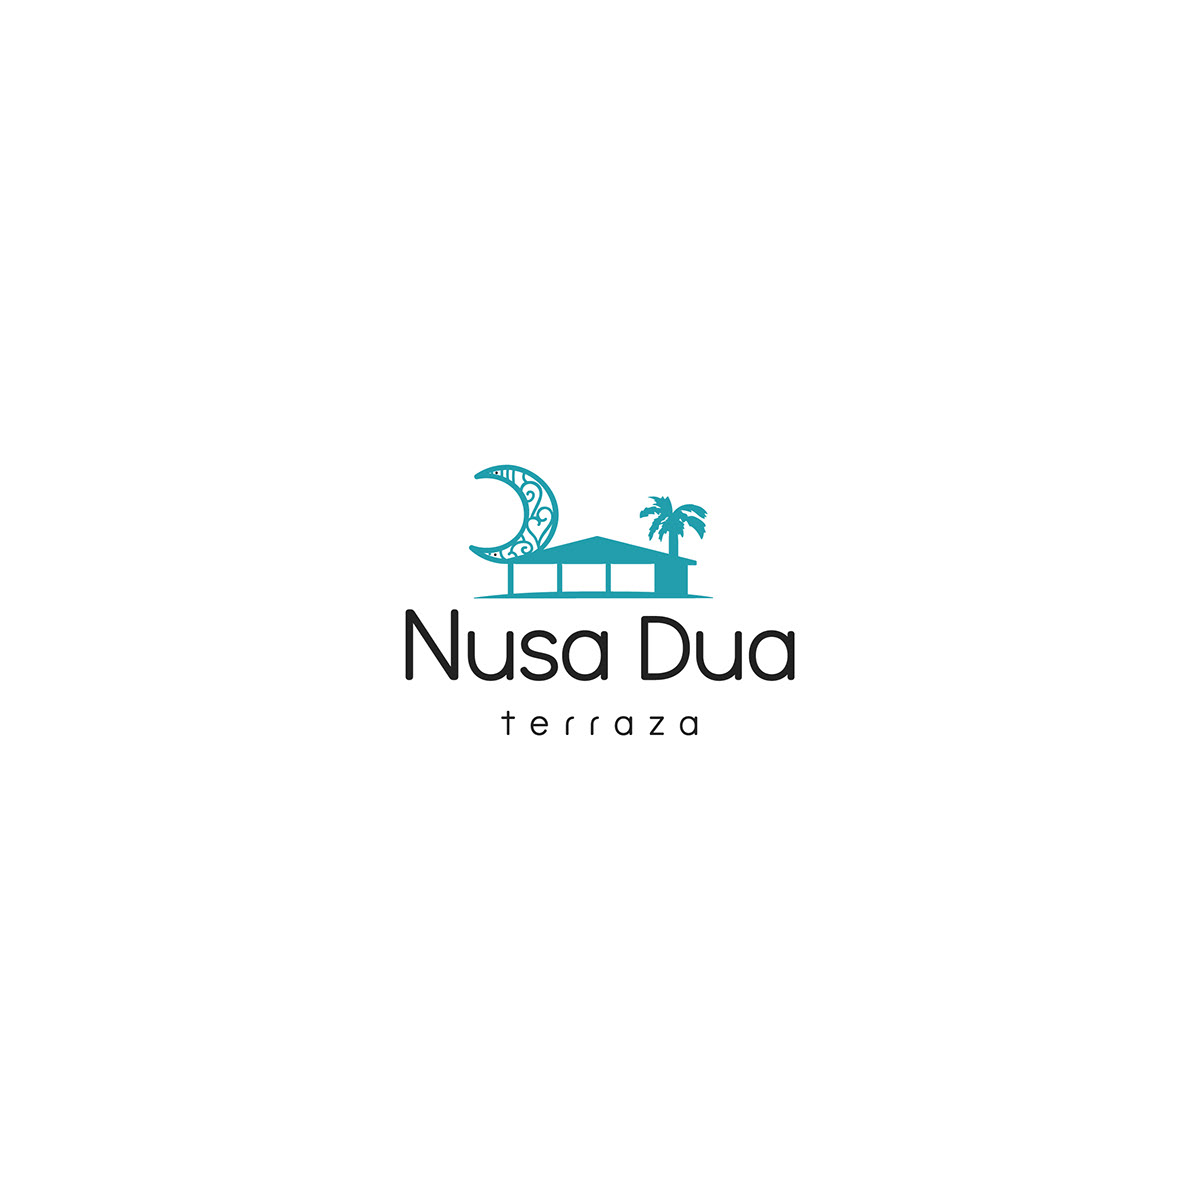 chillout diseño diseño gráfico imagotipo logo Nusa Dua terraza Tropical